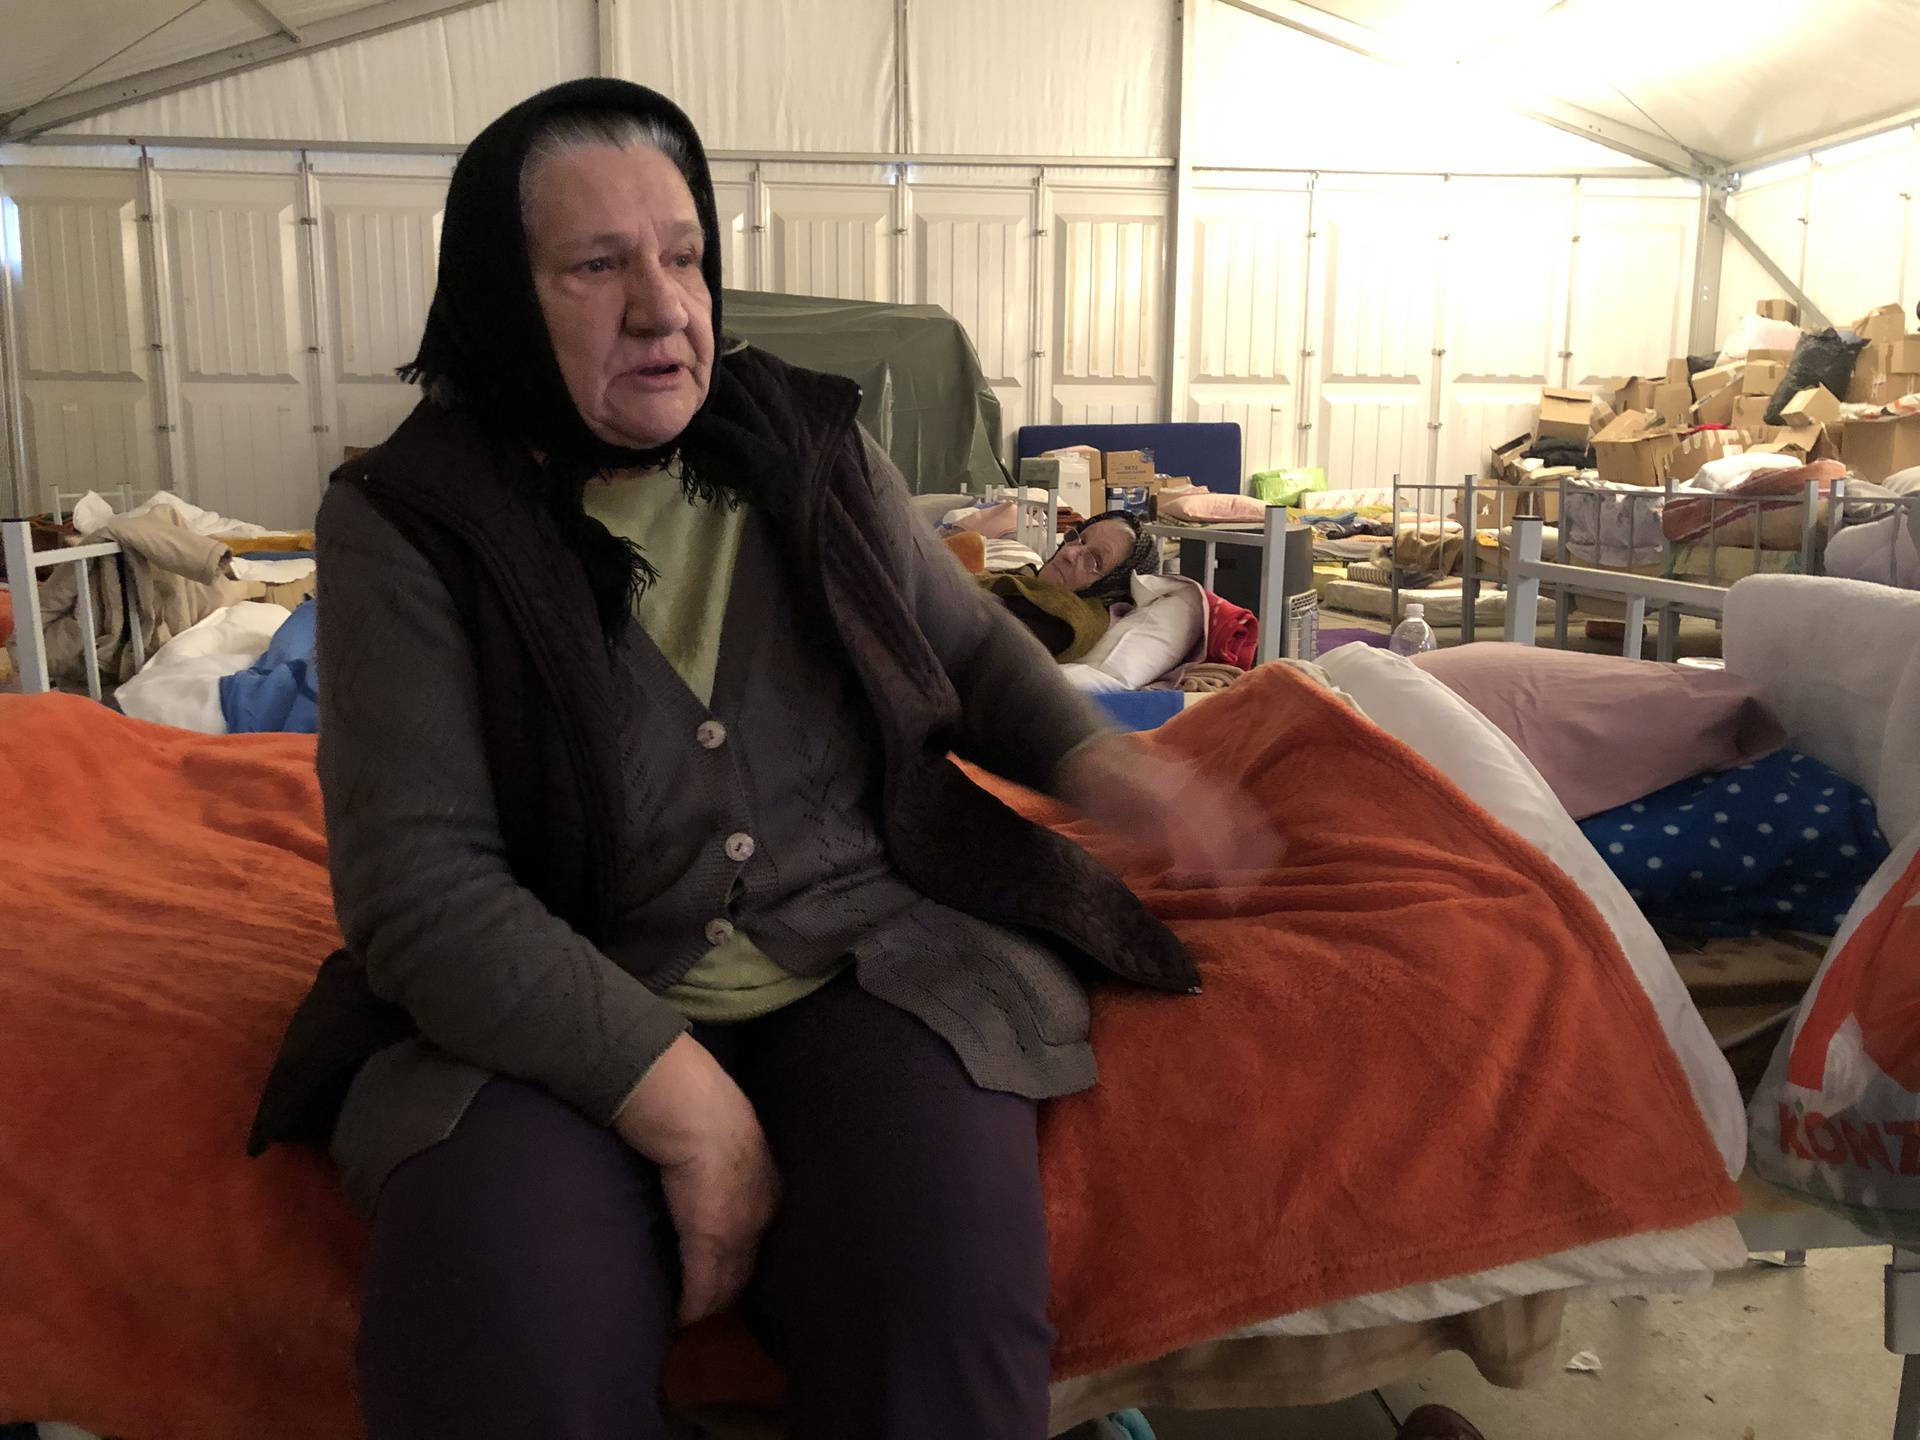 Suze bake Rankice: 'Od potresa se nisam ni okupala, kuća mi je uništena. Nemam nikog svog'